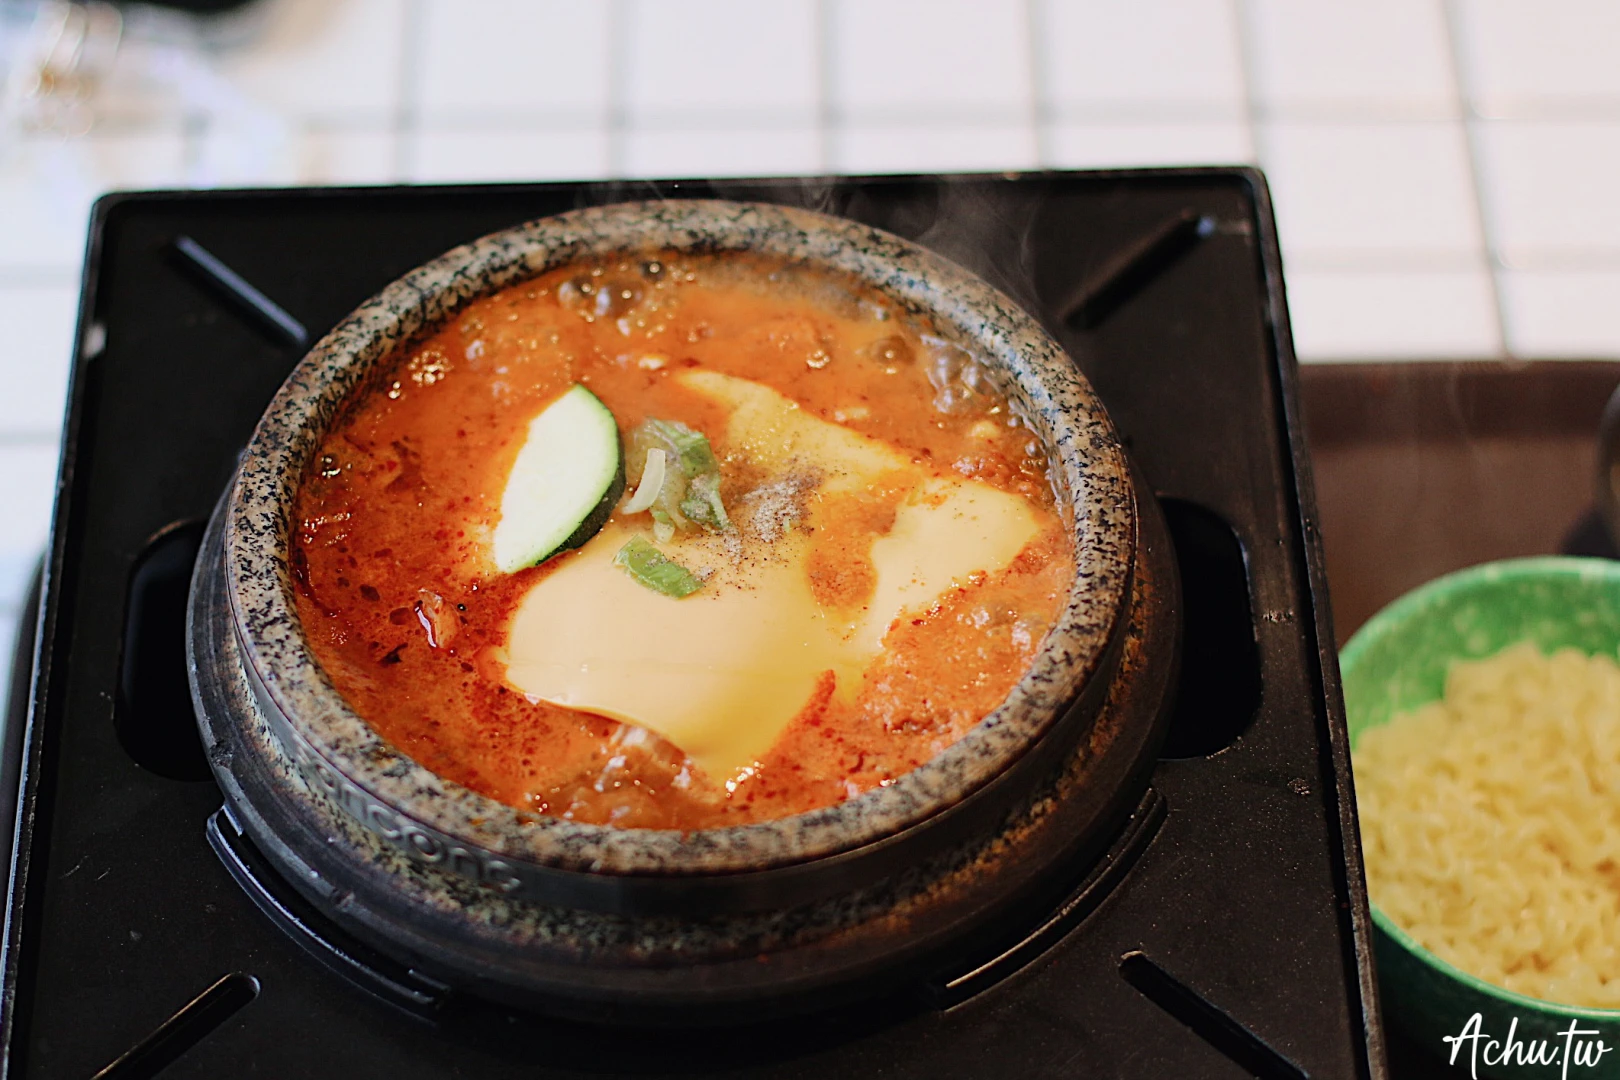 吃你豆腐 韓式湯飯店